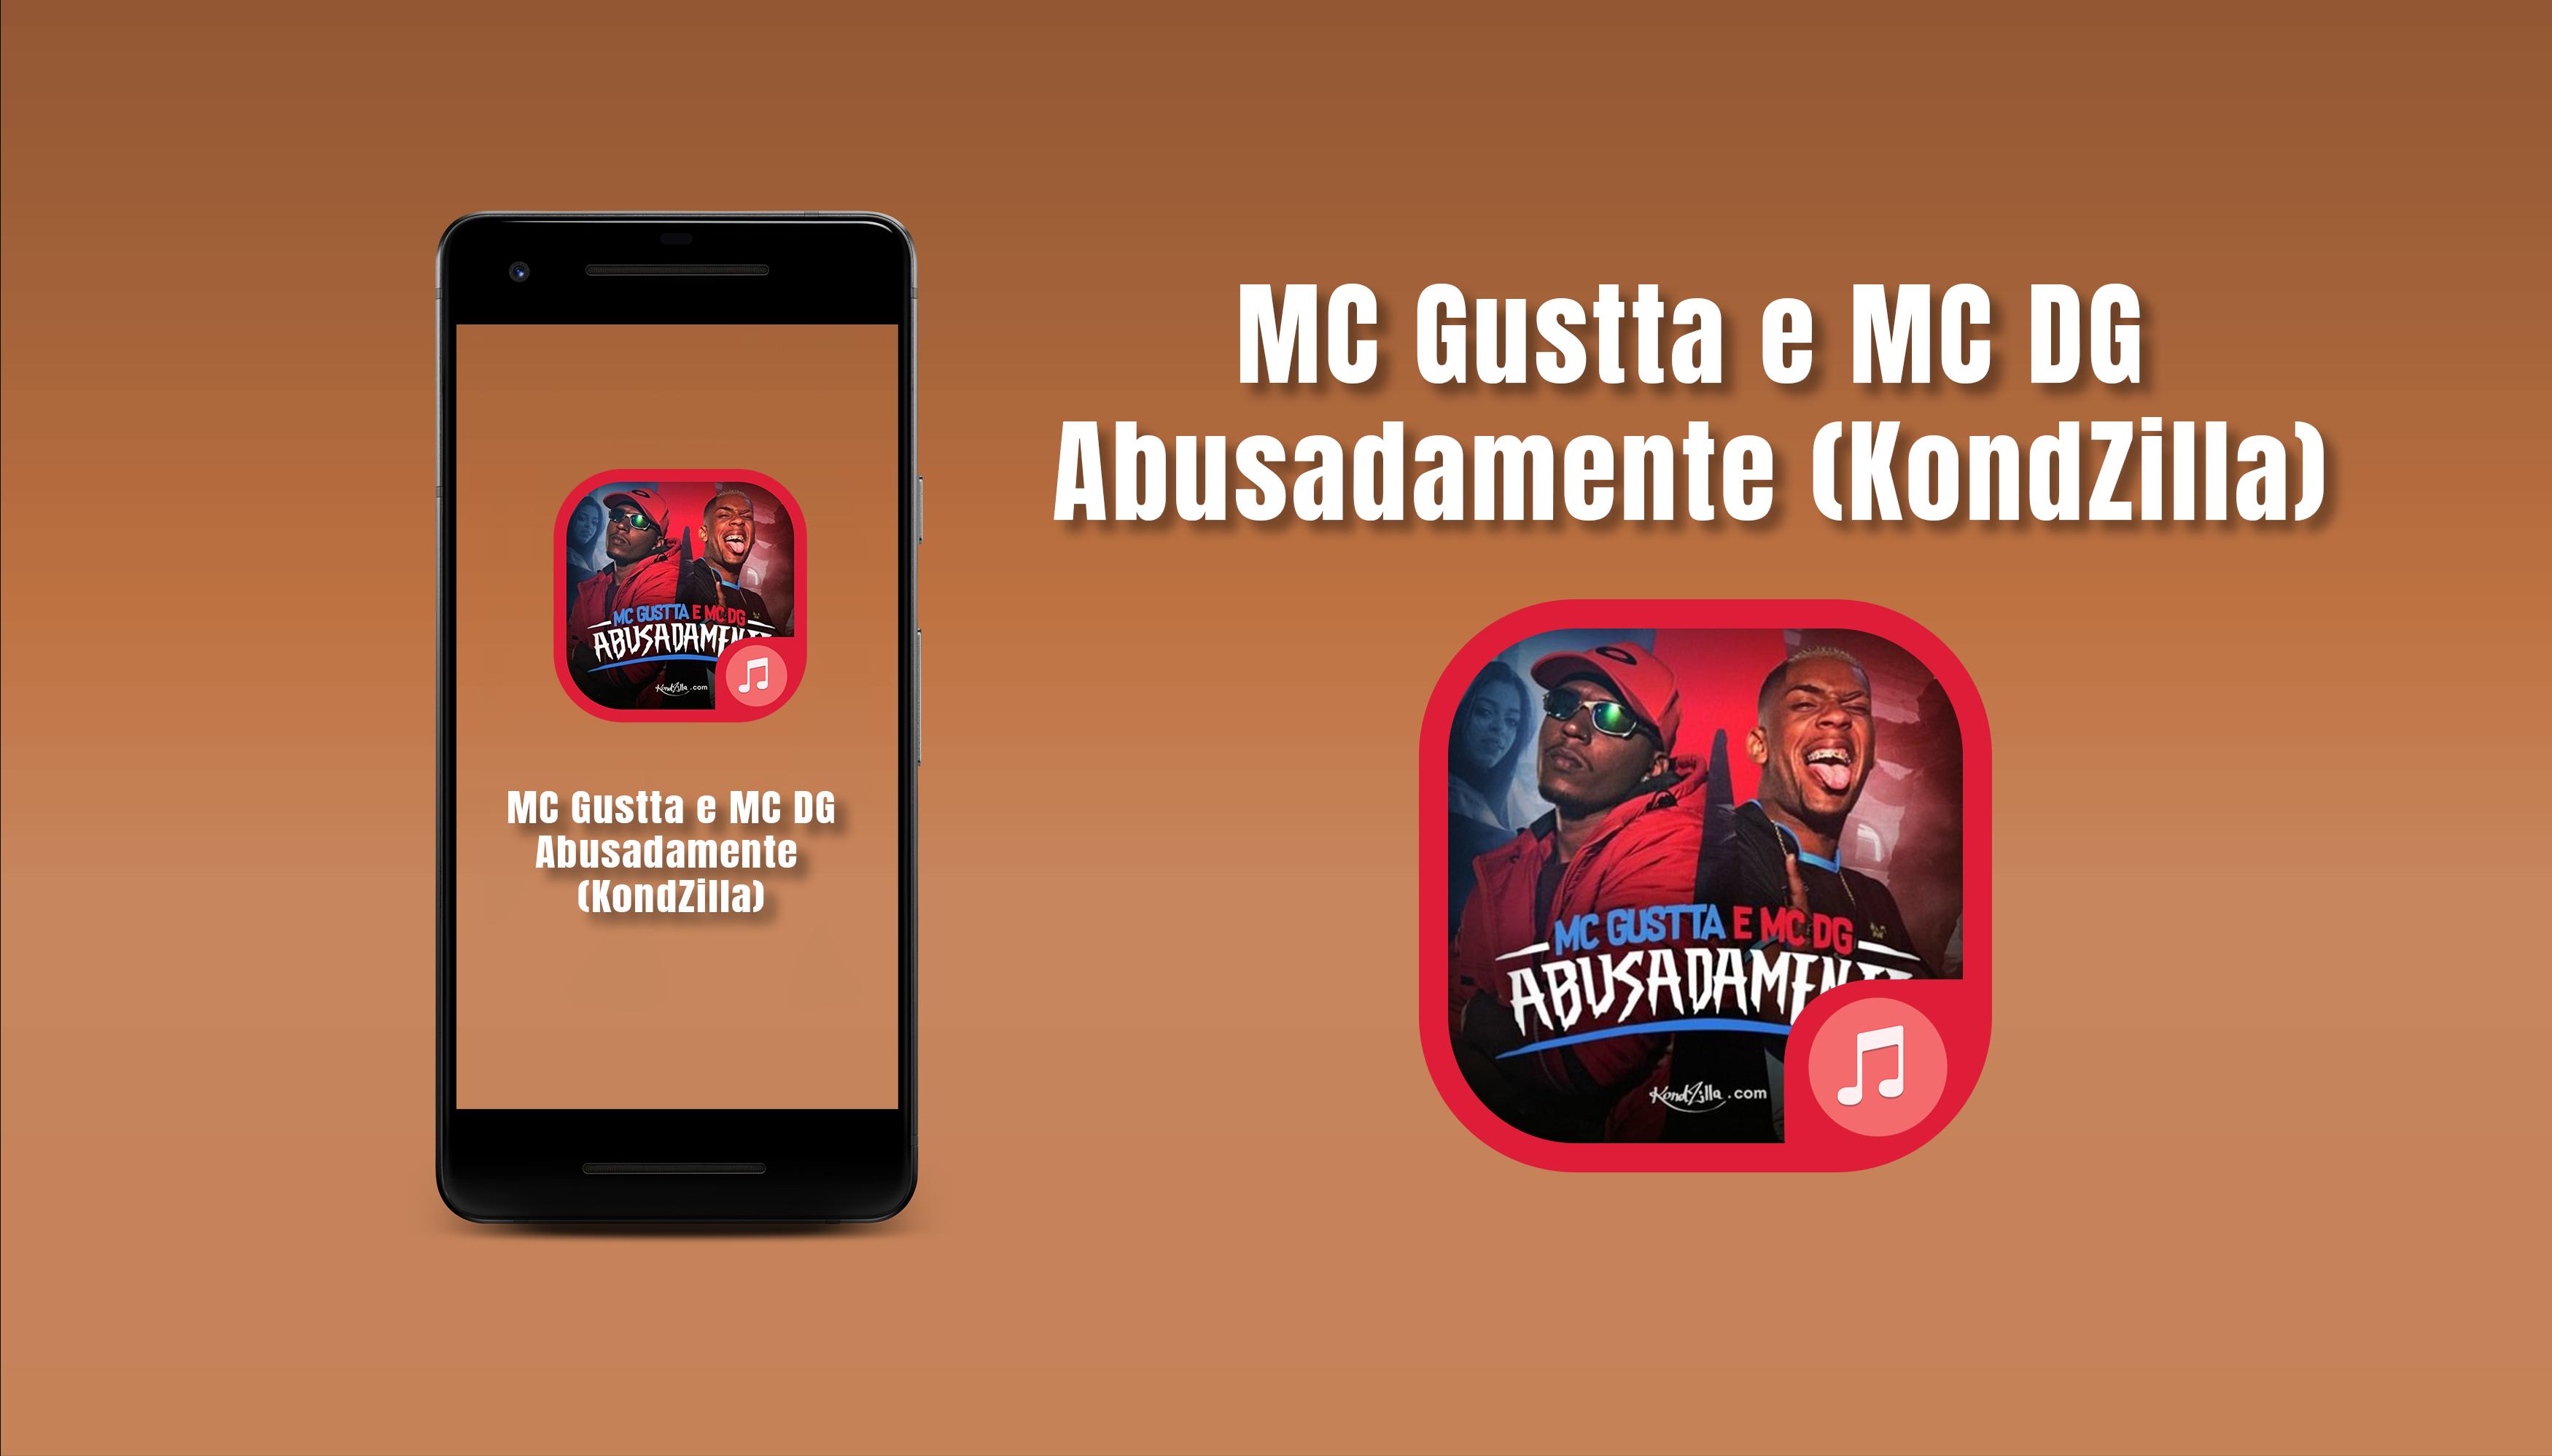 MC Gustta e MC DG - Abusadamente (KondZilla) for Android - APK Download